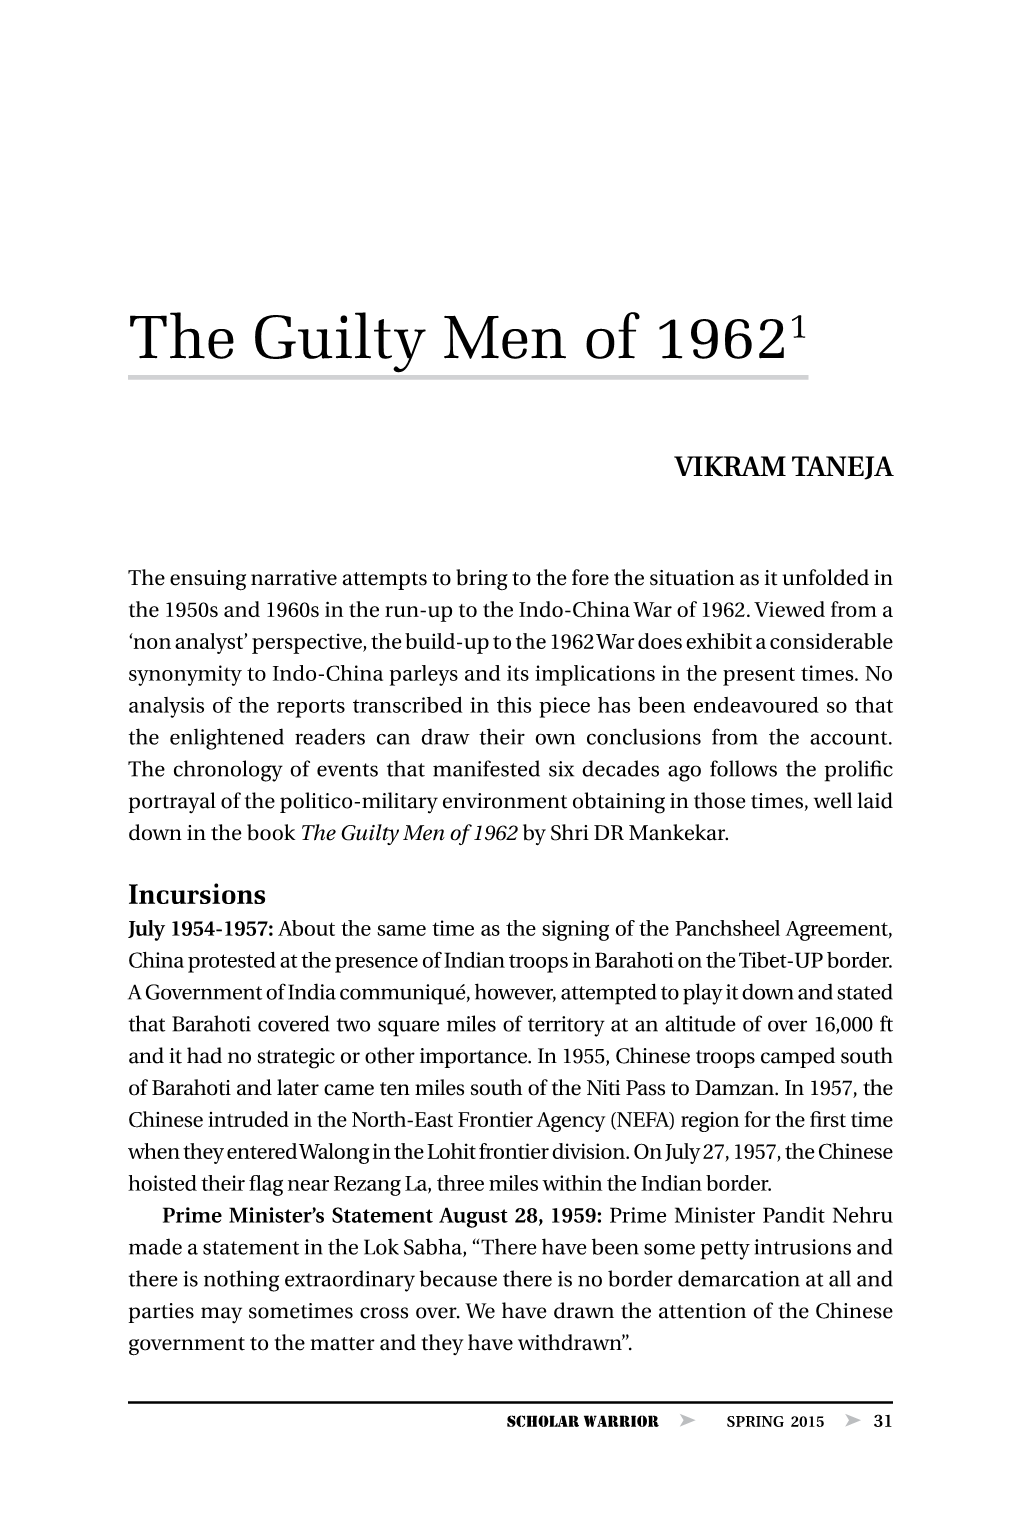 The Guilty Men of 1962, by Vikram Taneja